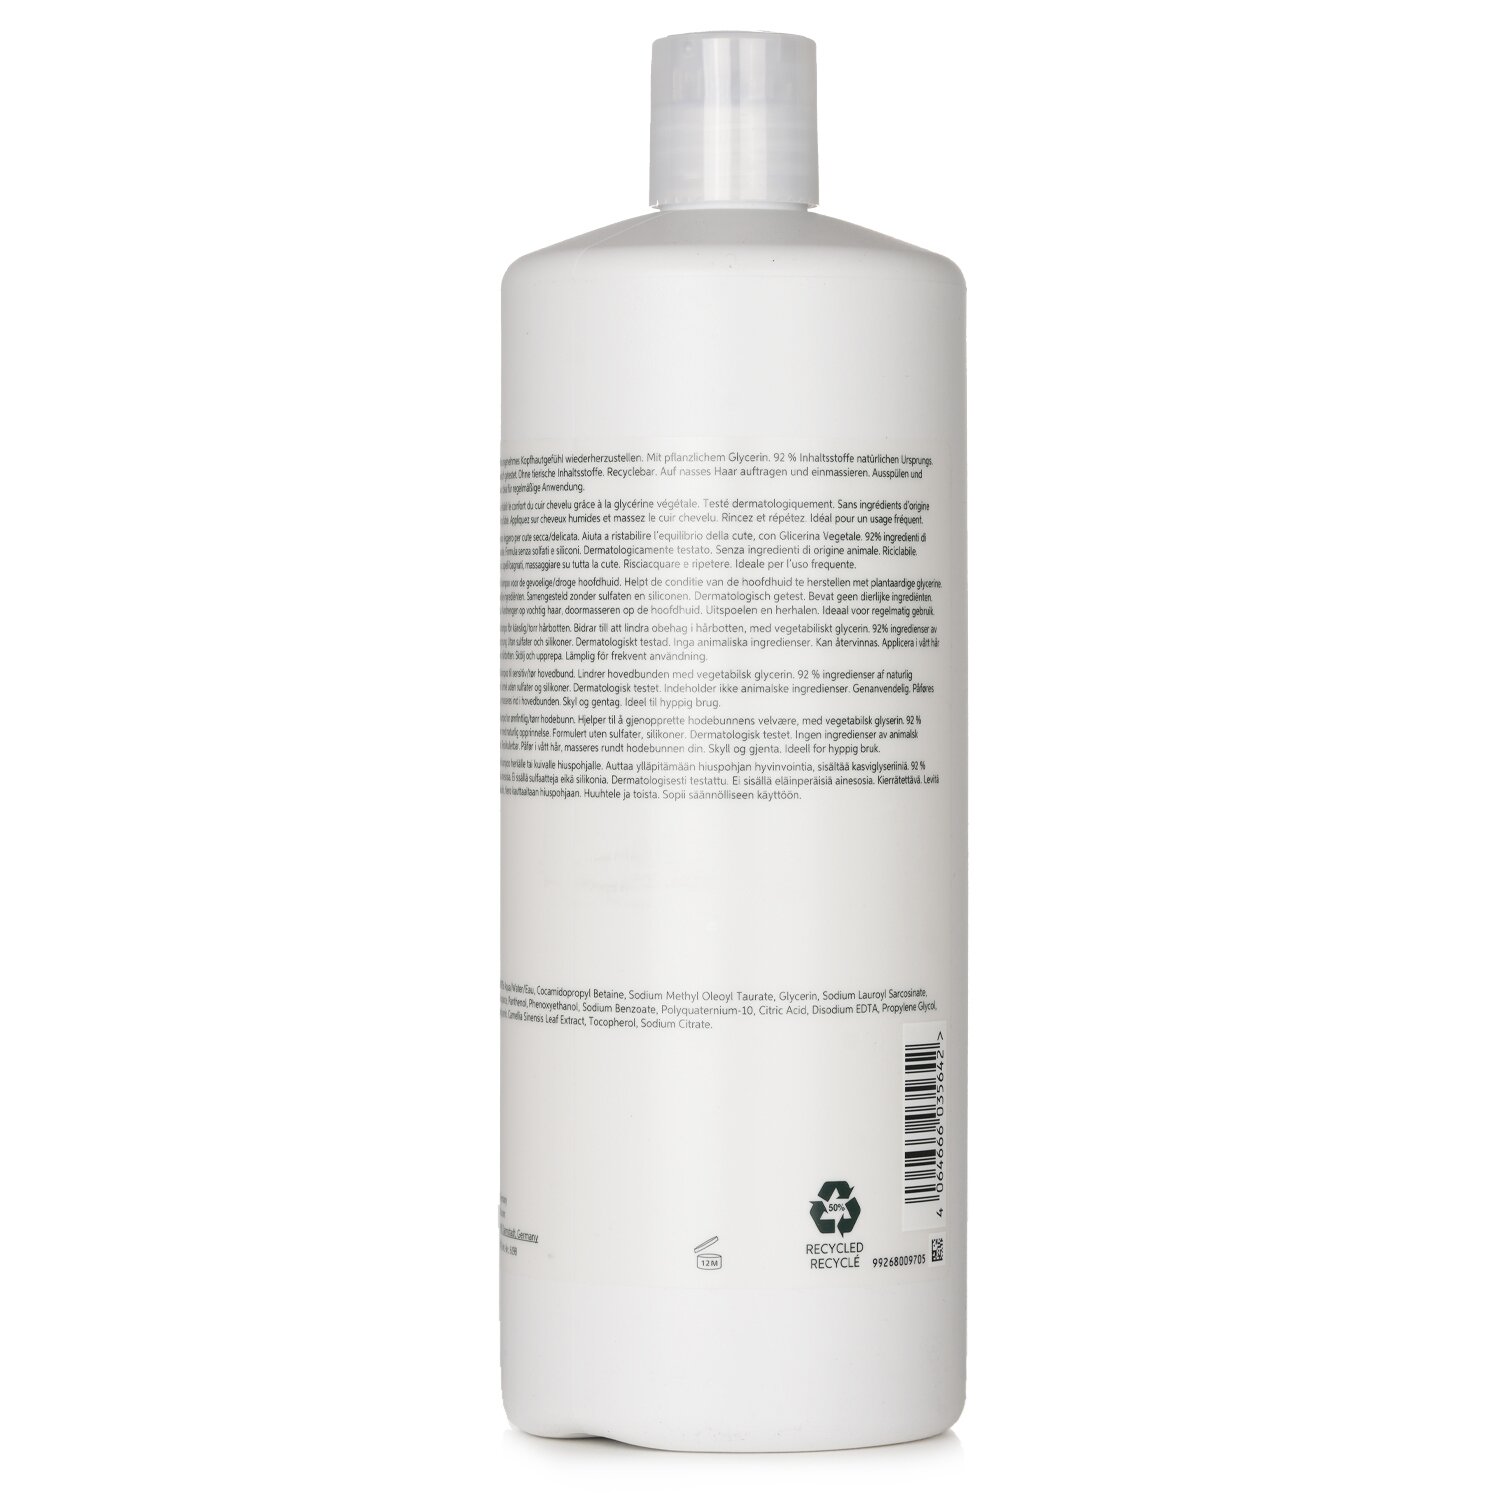 Wella New Elements Shampoo Calm 1000ml - champú cuero cabelludo sensible